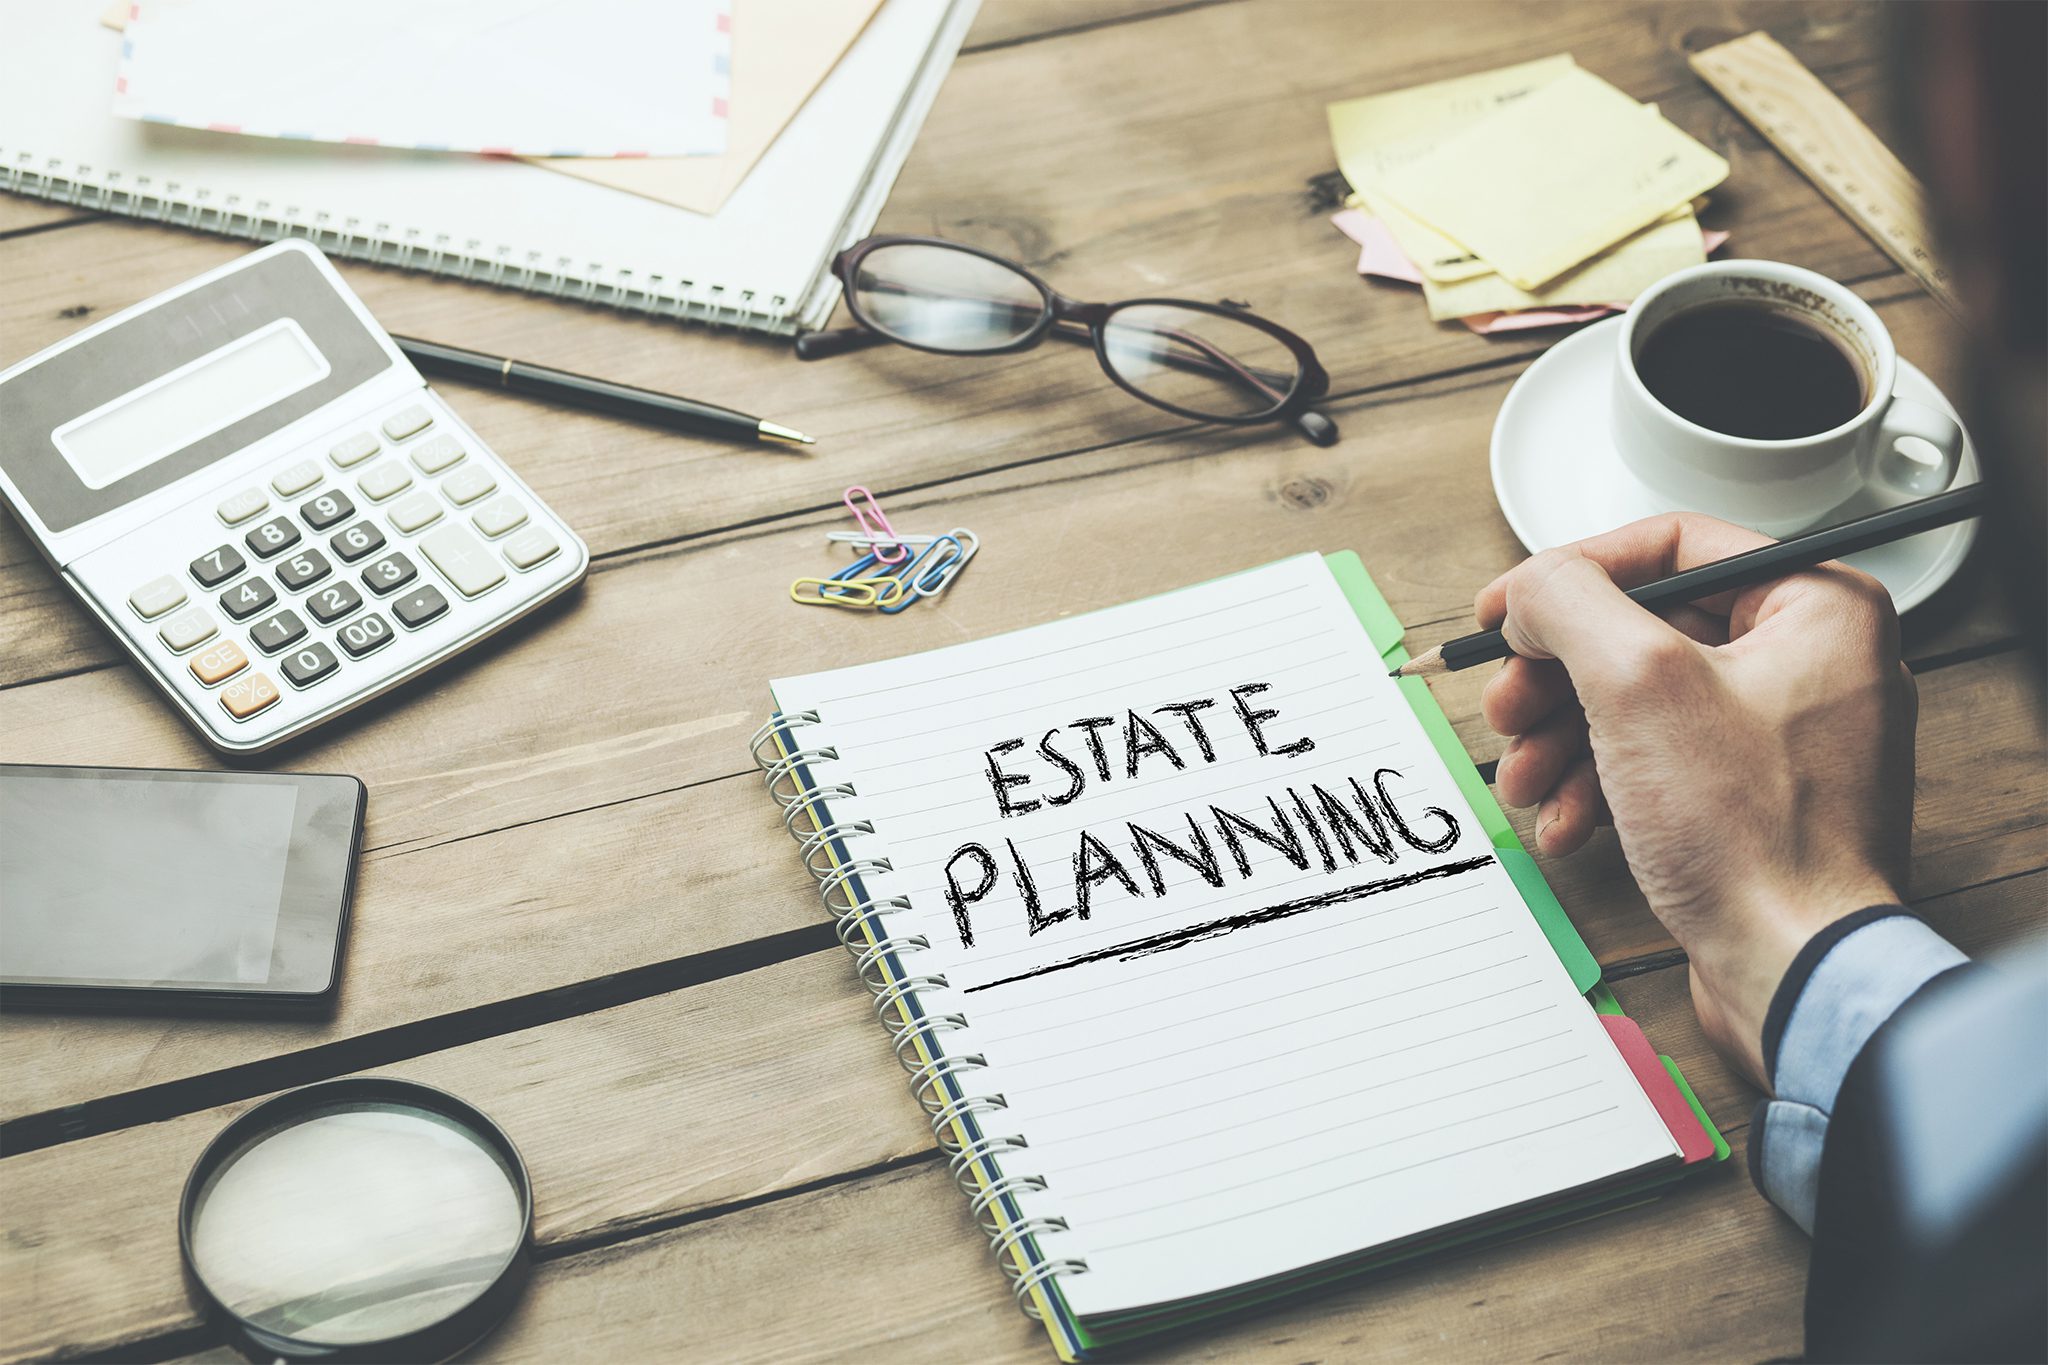 Estate Planning Tips